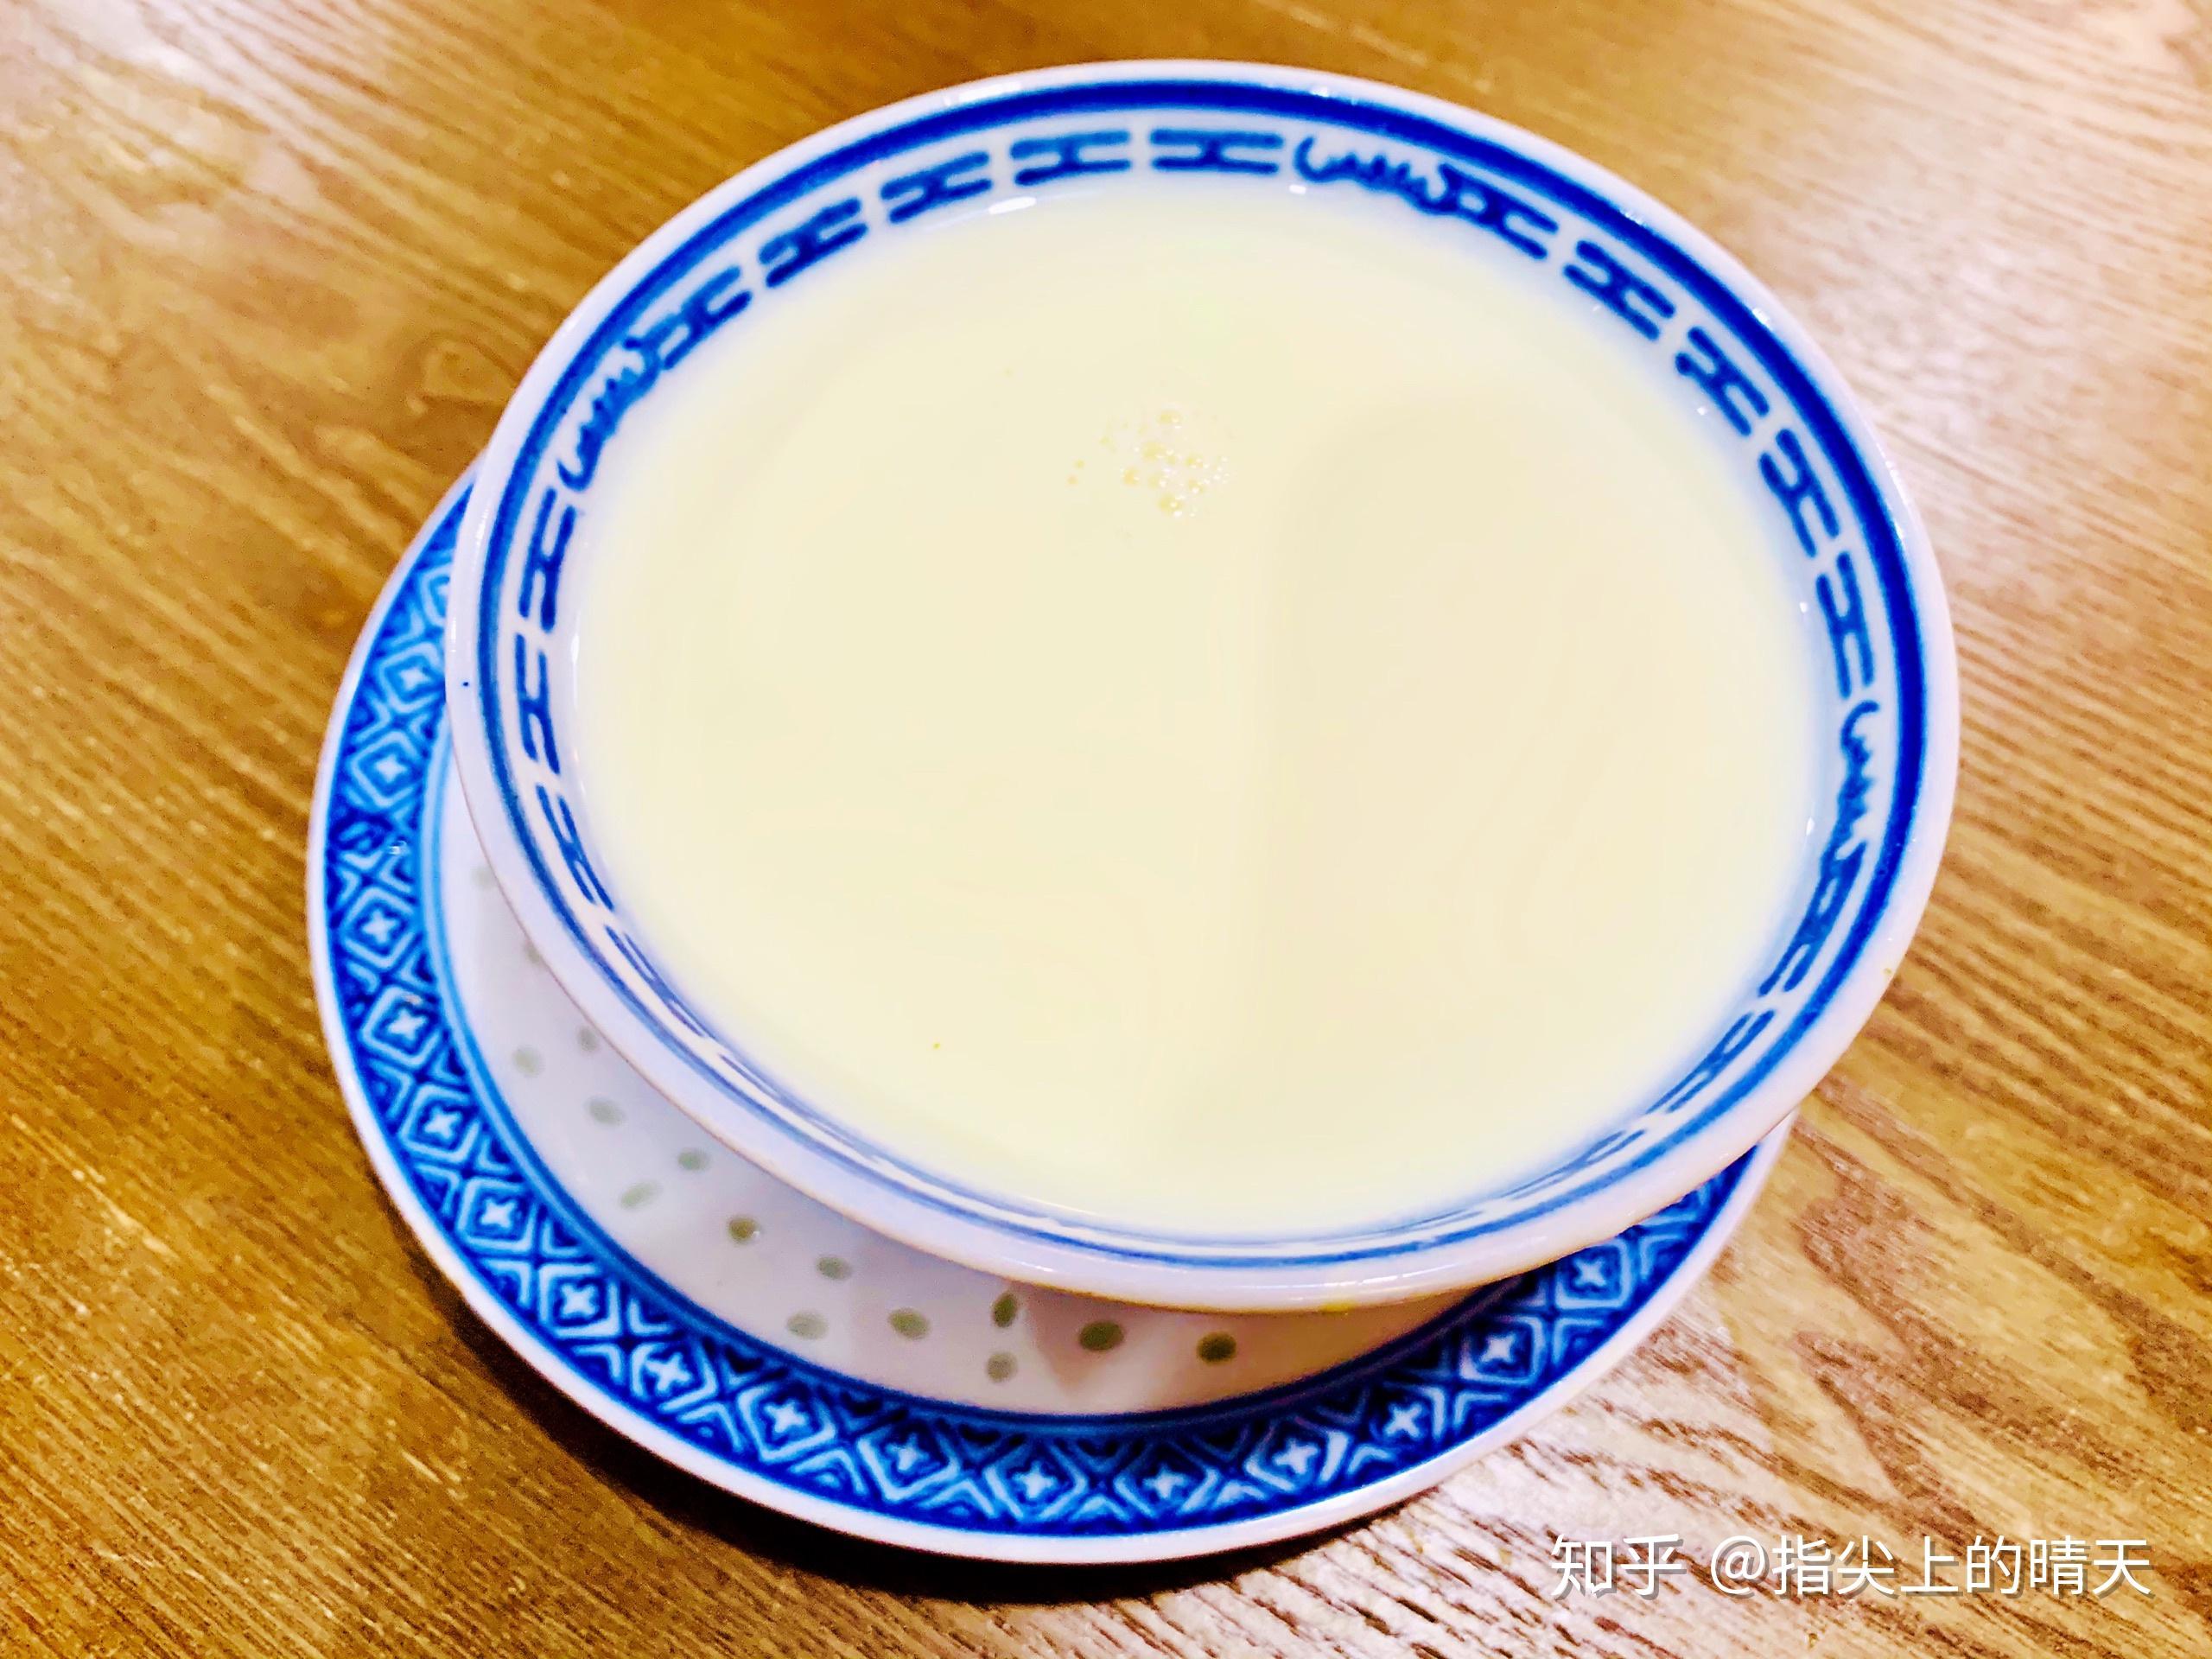 薑汁撞奶食譜、做法 | AhSheh Loo的Cook1Cook食譜分享